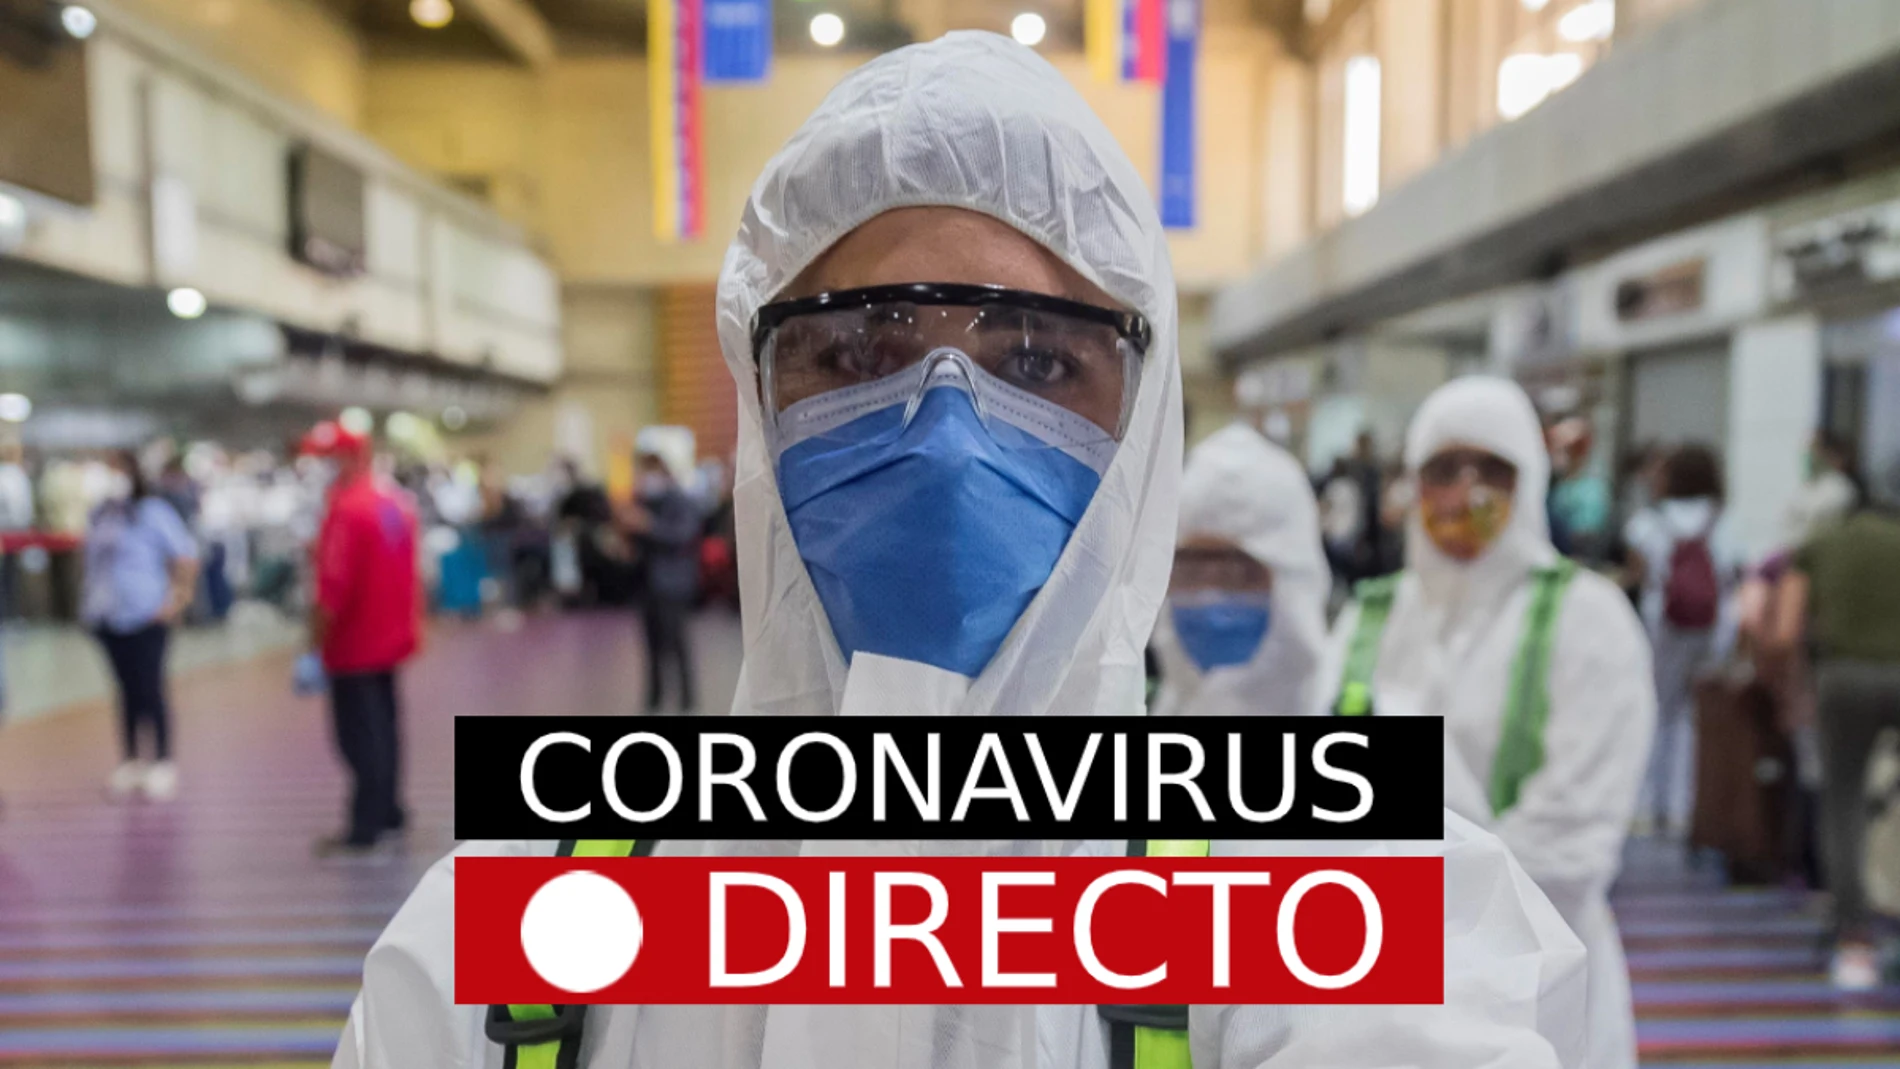 La ultima hora del coronavirus, en directo en laSexta.com